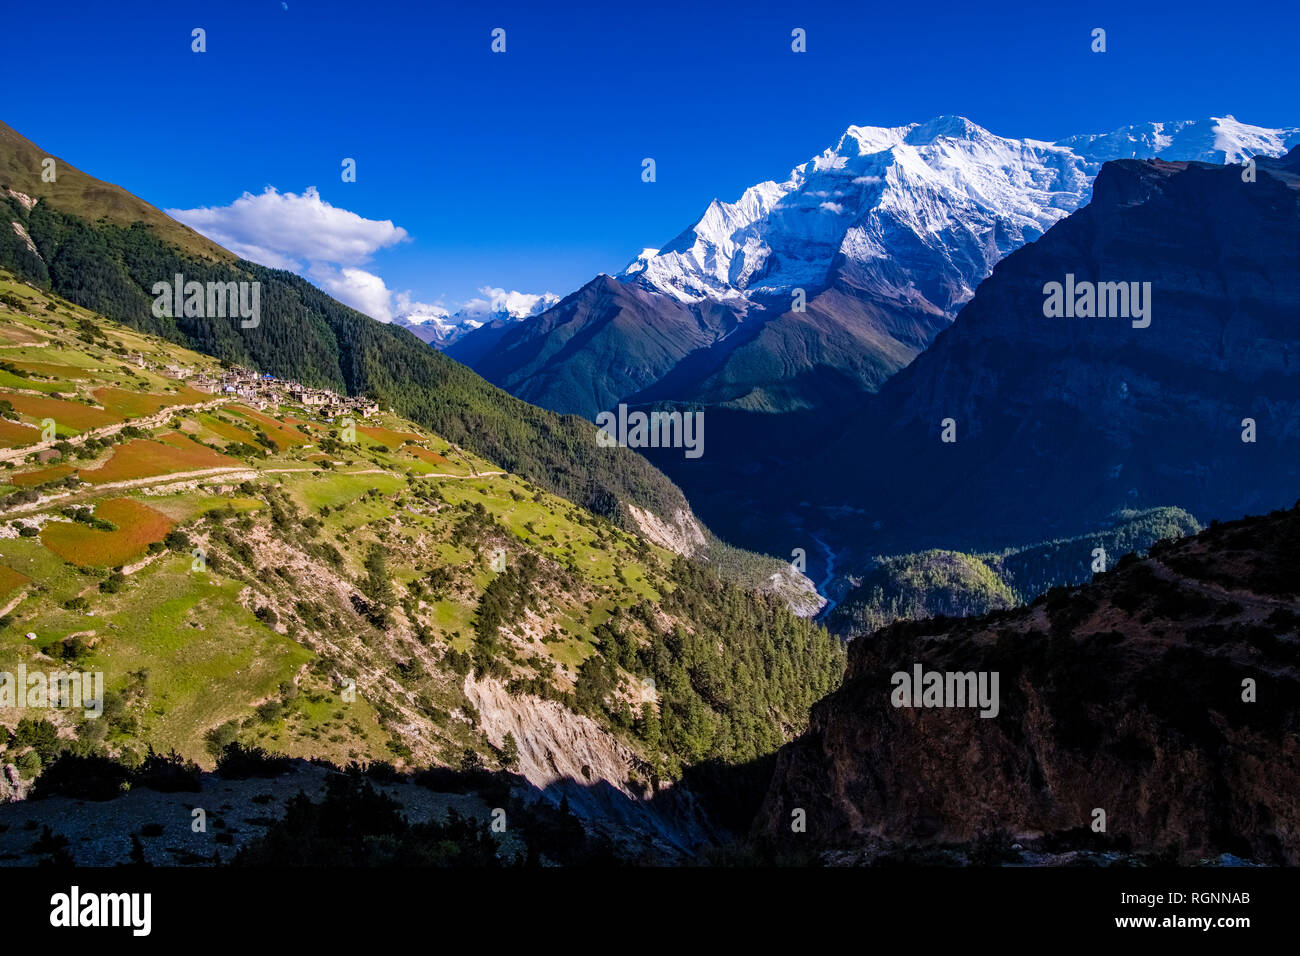 Antenna di panoramica vista sul villaggio e dintorni agricoli con il grano saraceno e campi di orzo, la coperta di neve il vertice di Annapurna 2 Nel dis Foto Stock